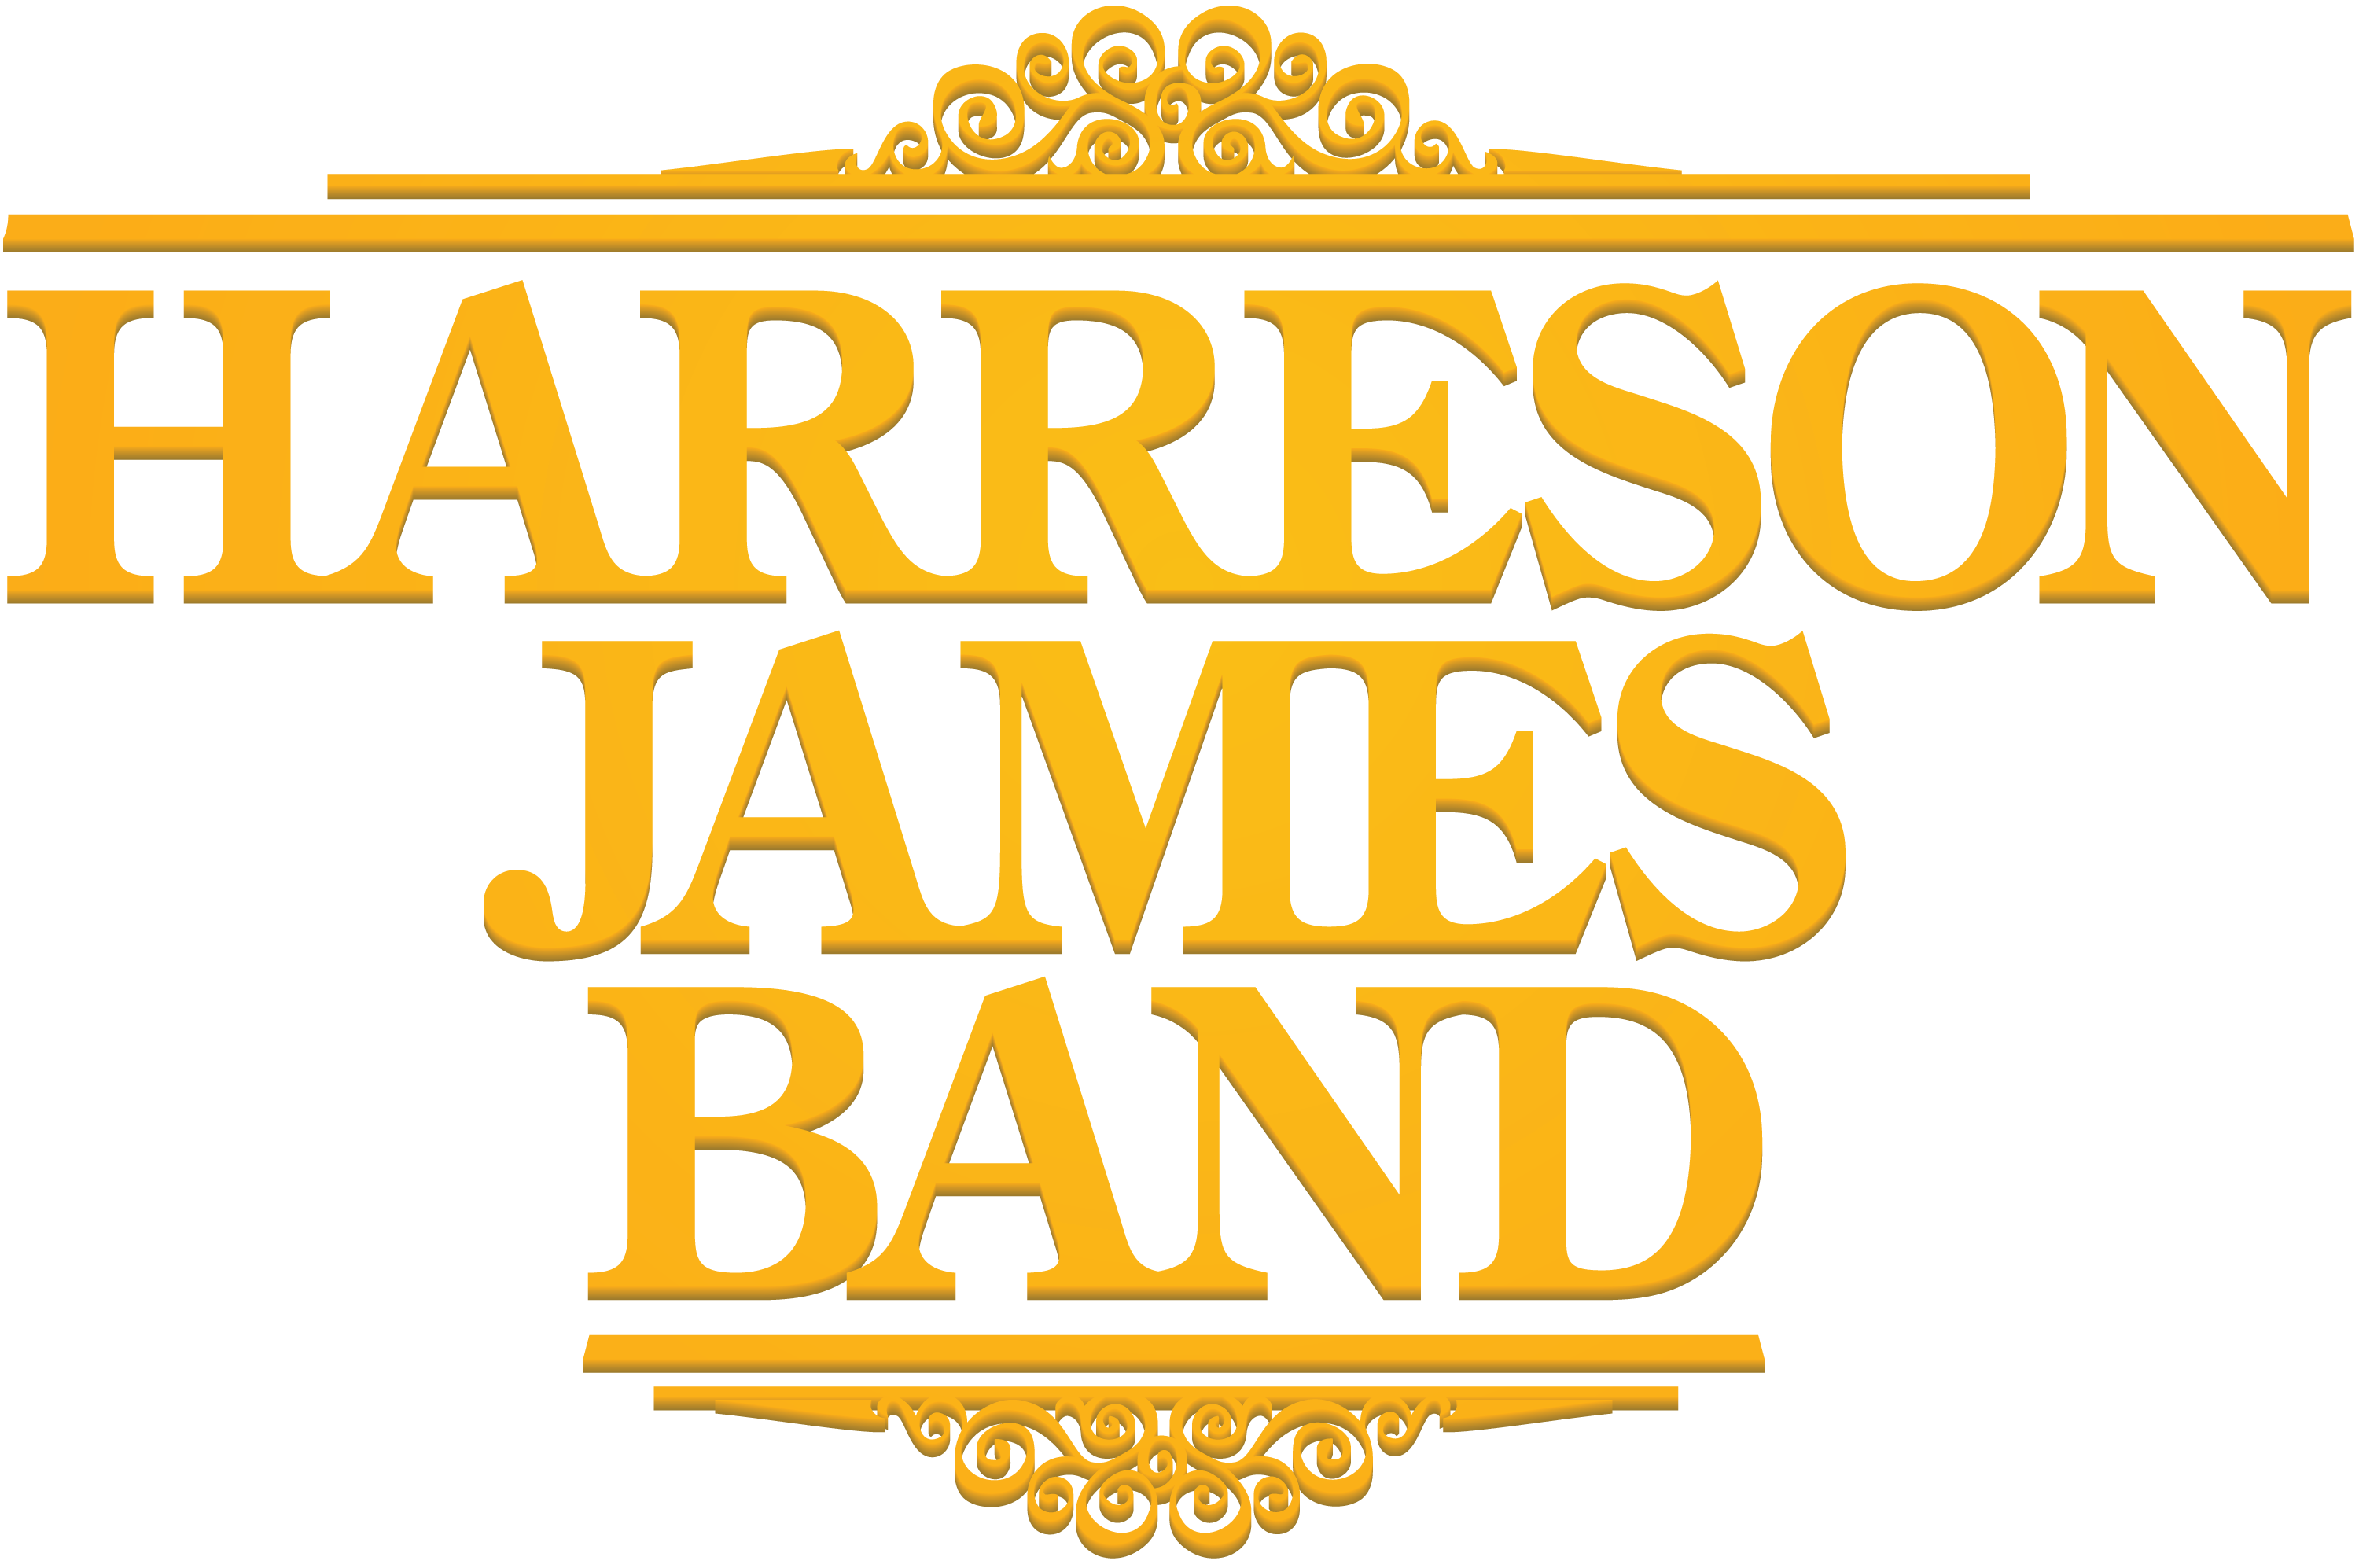 Harreson James Band